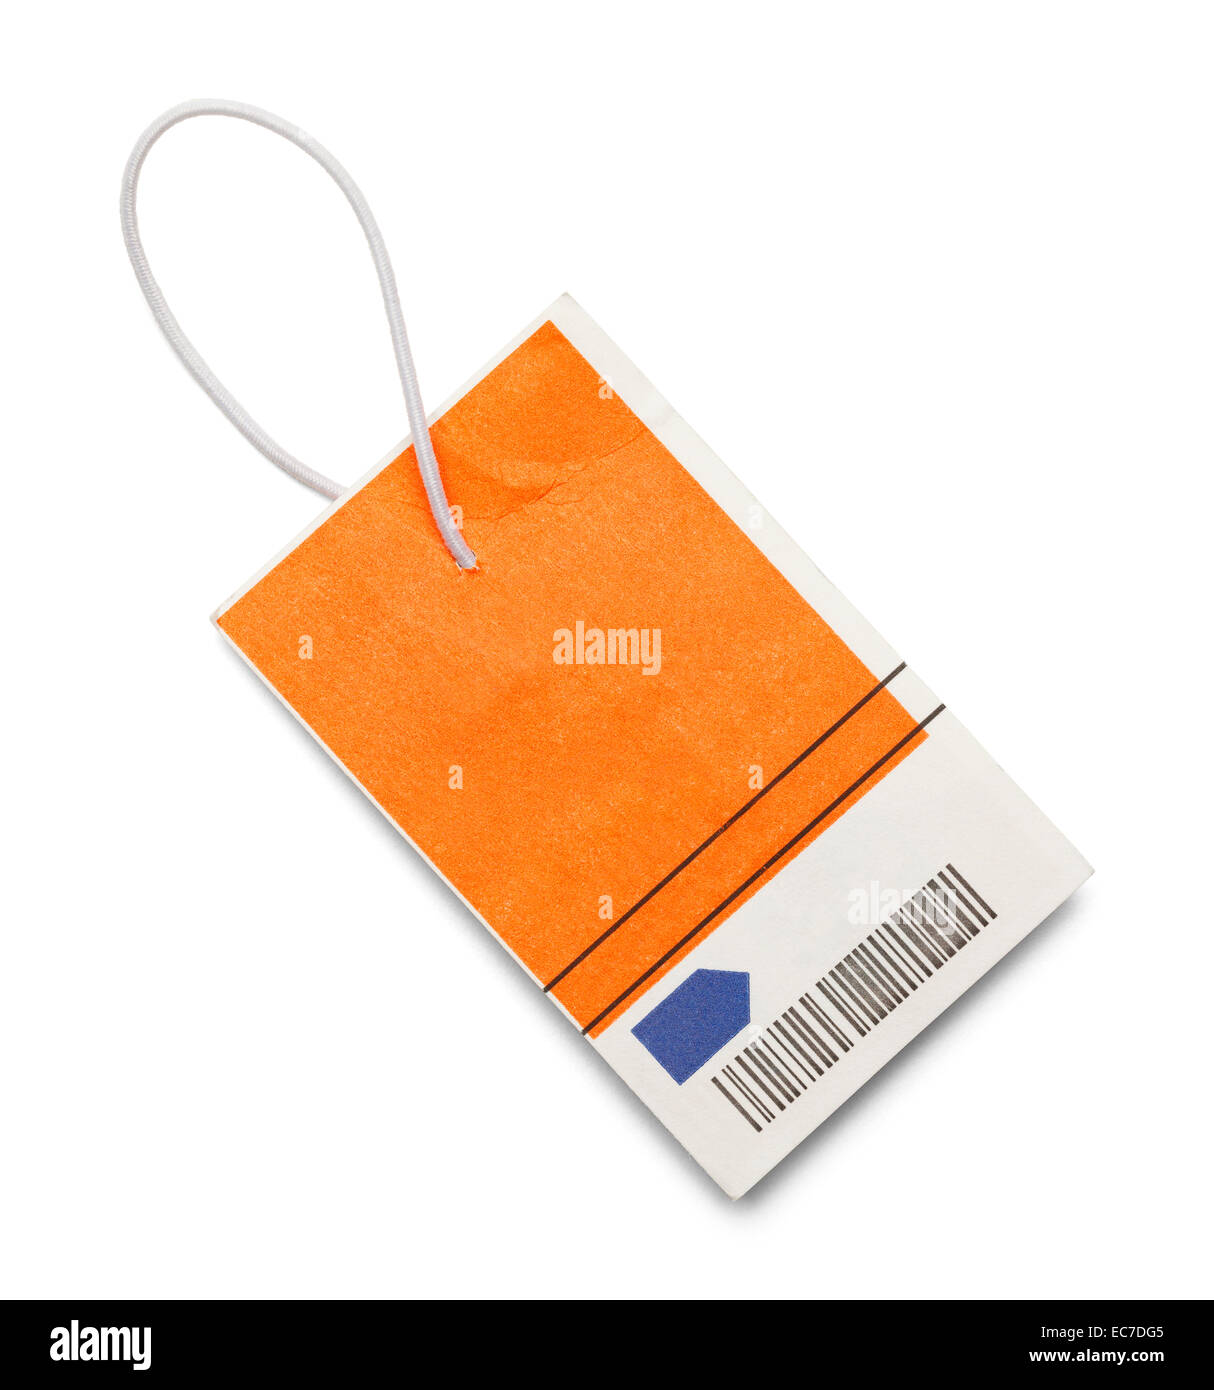 Tag vente Orange et Blanc avec code barre isolé sur fond blanc. Banque D'Images